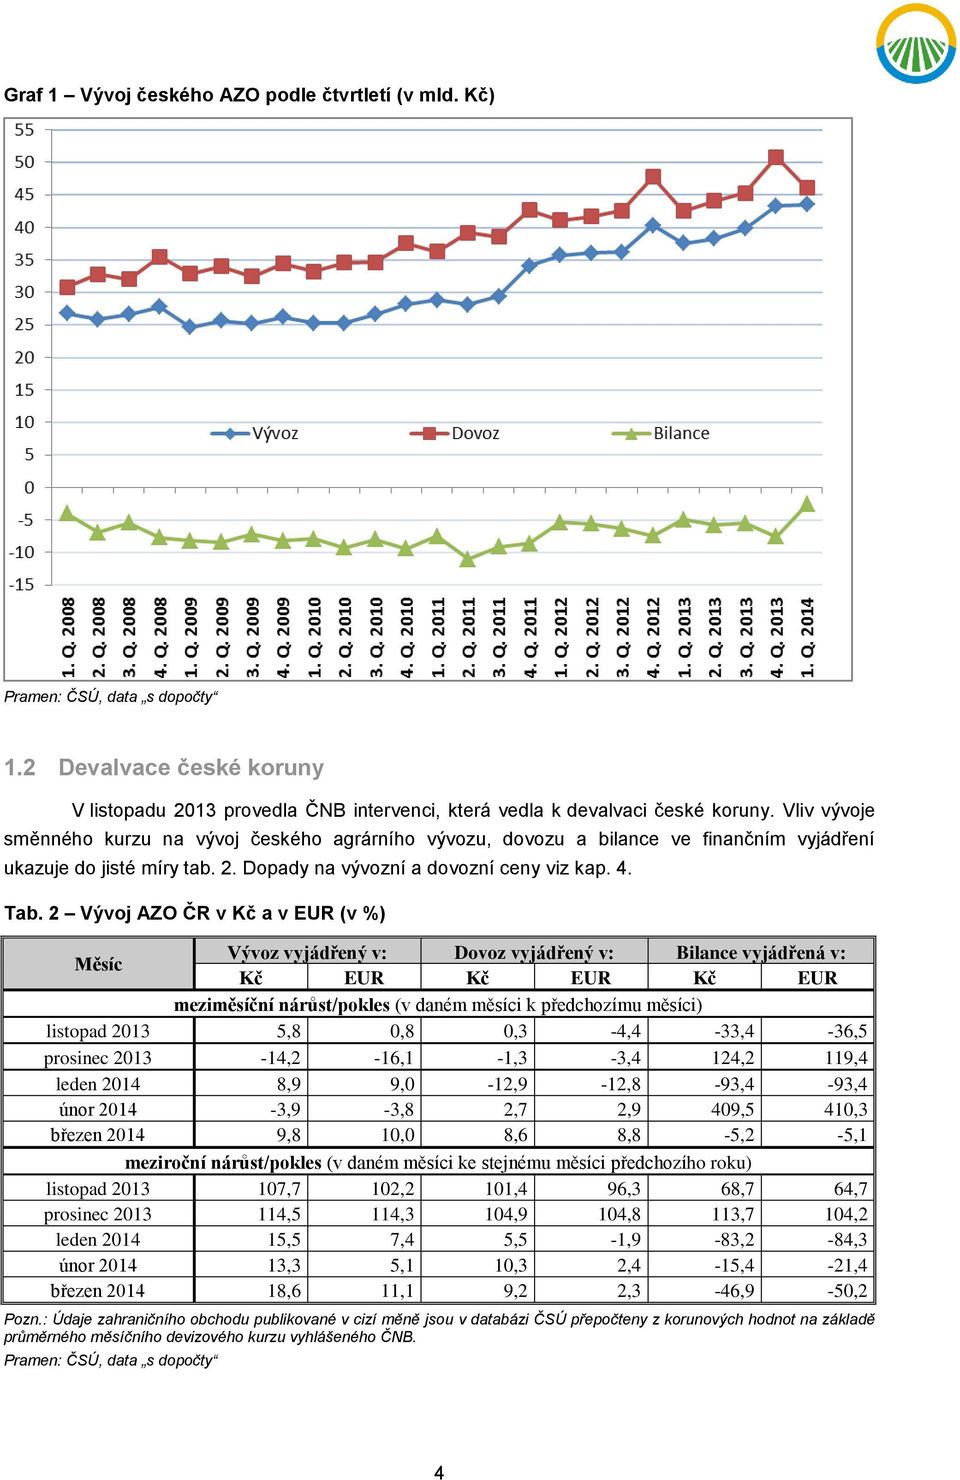 2 Vývoj AZO ČR v Kč a v EUR (v %) Měsíc Vývoz vyjádřený v: Dovoz vyjádřený v: Bilance vyjádřená v: Kč EUR Kč EUR Kč EUR meziměsíční nárůst/pokles (v daném měsíci k předchozímu měsíci) listopad 2013